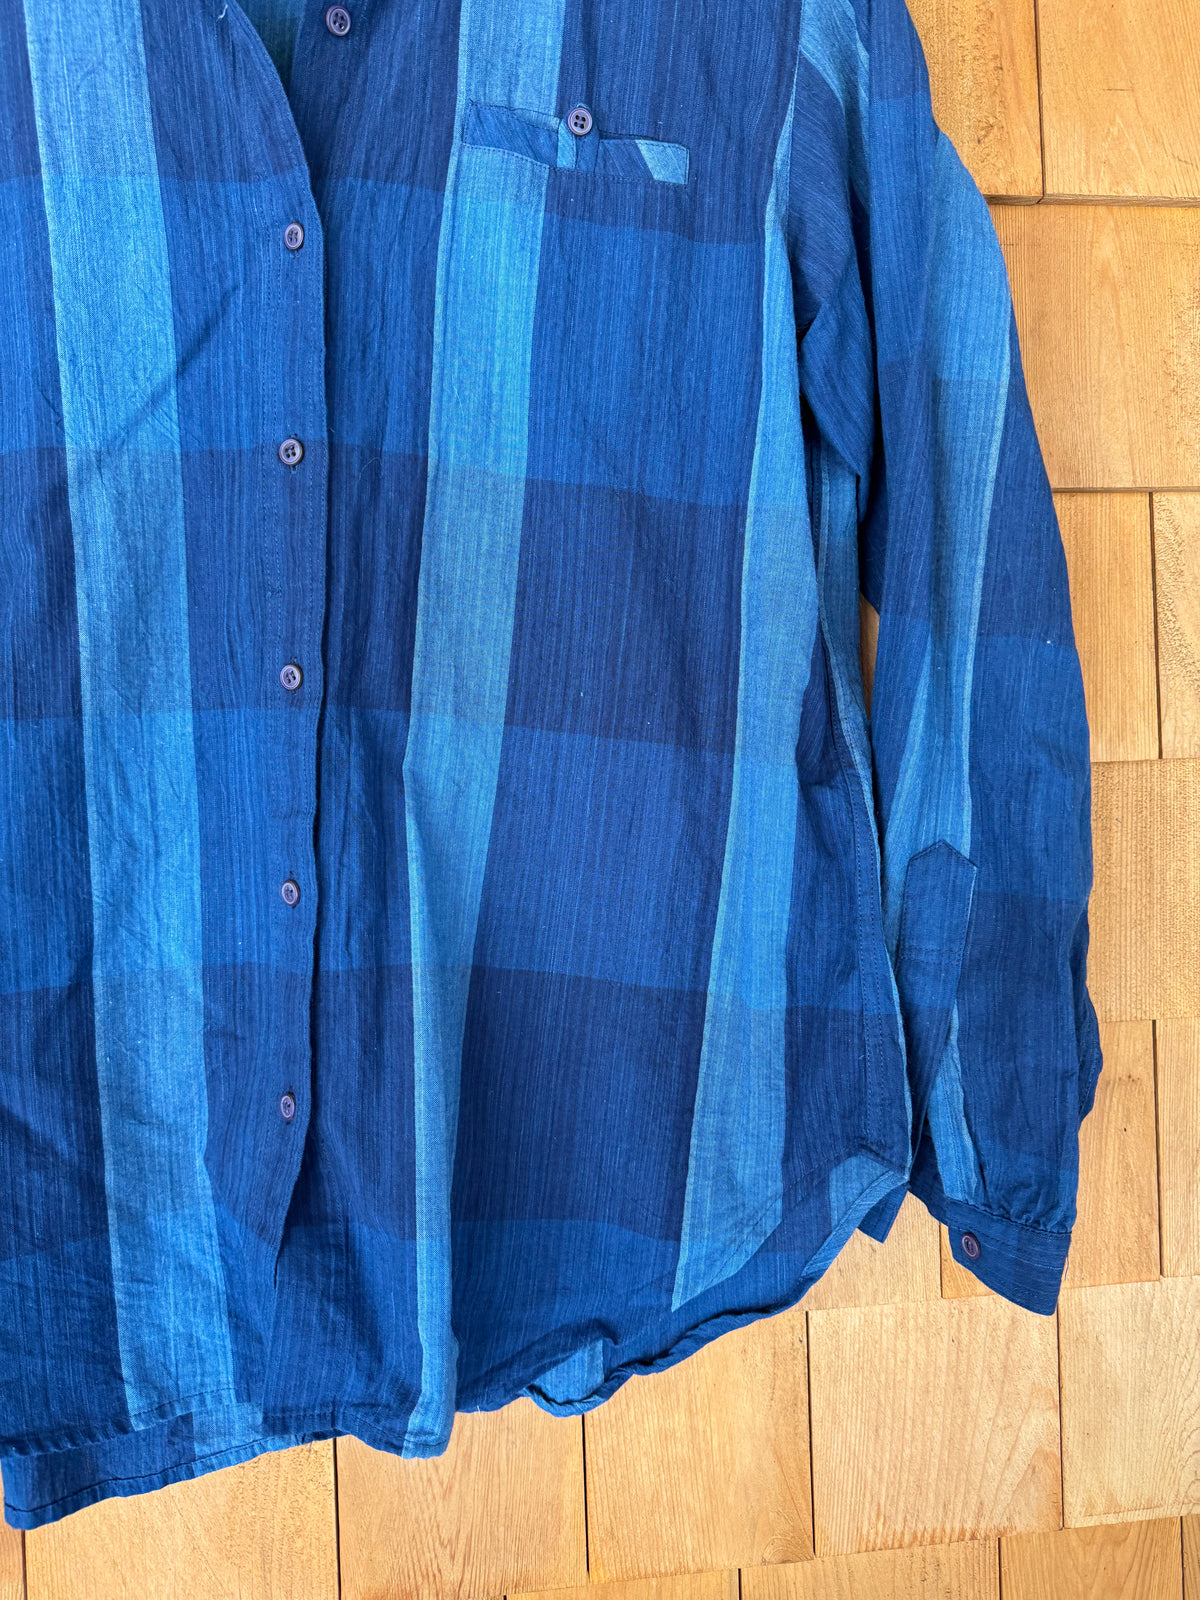 Vintage Super Soft Plaid Shirt - Blue + Blue